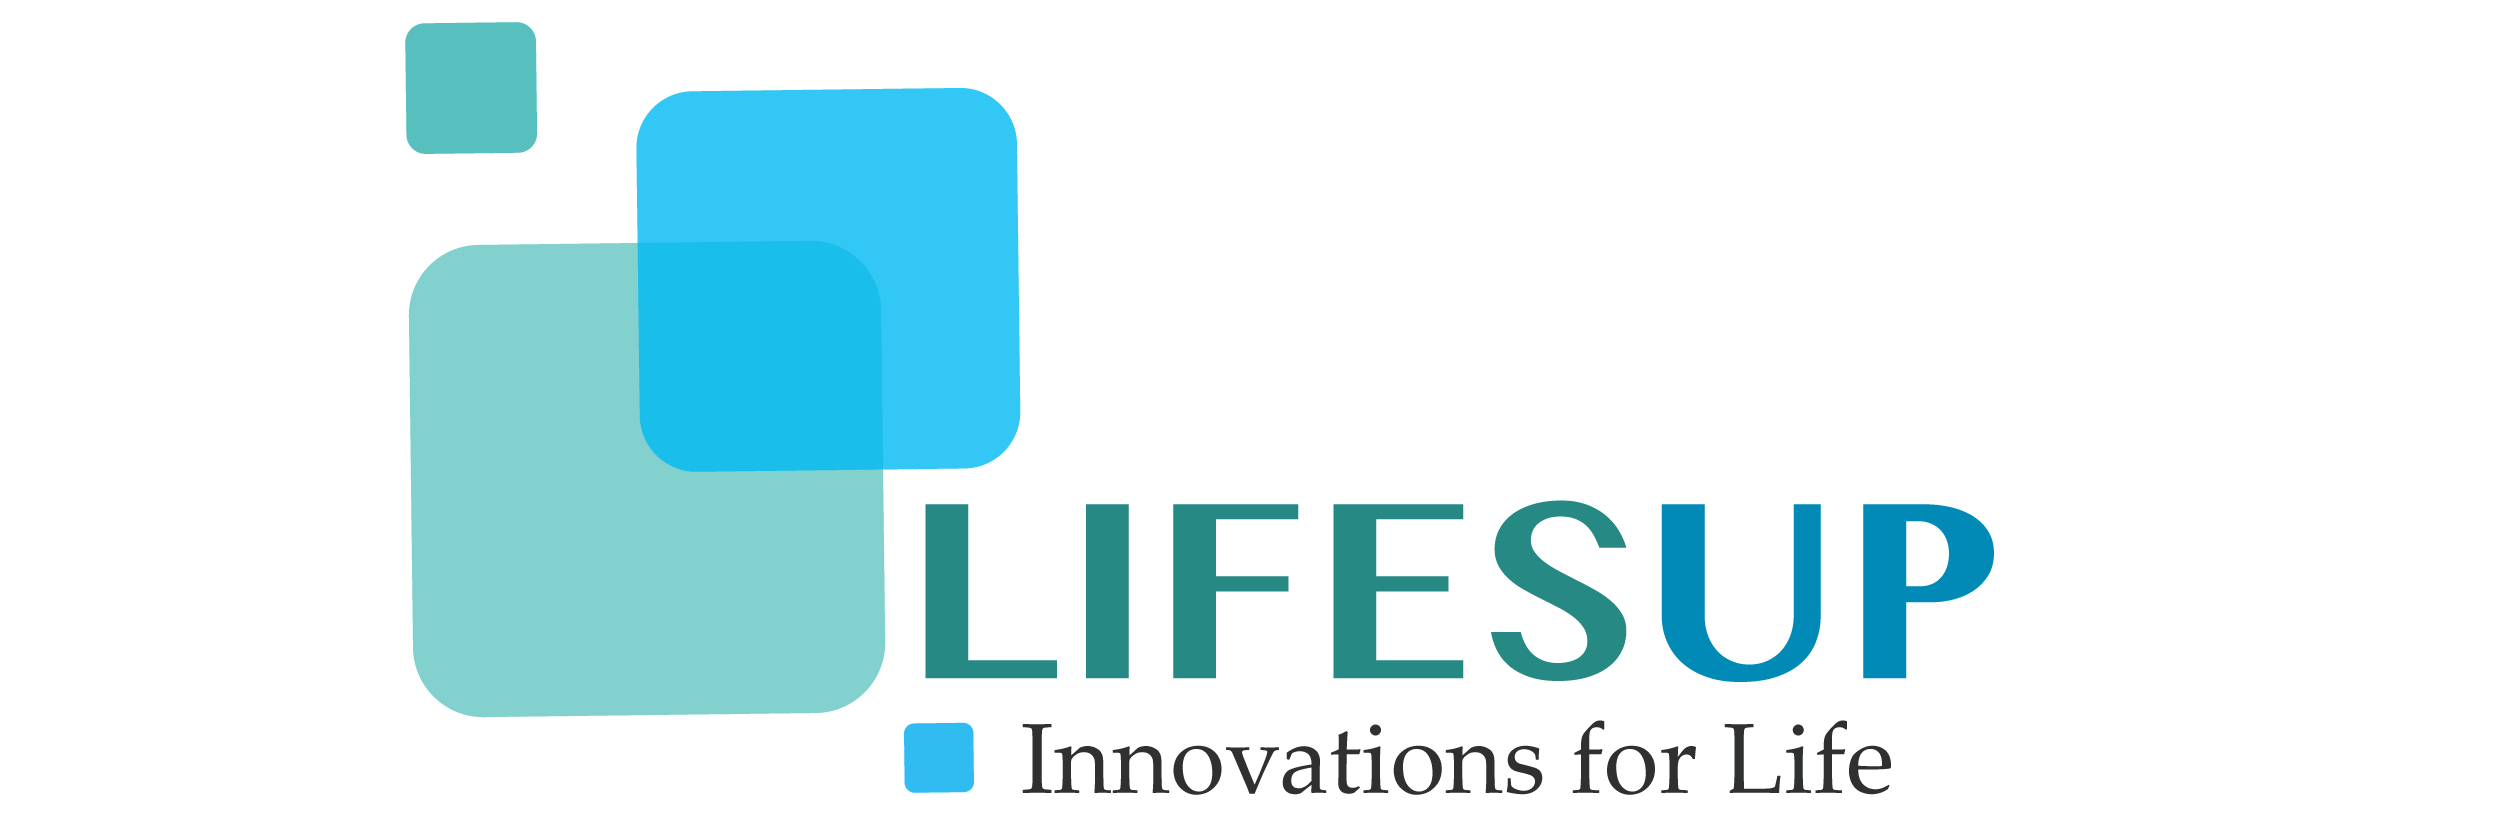 Lifesup logo